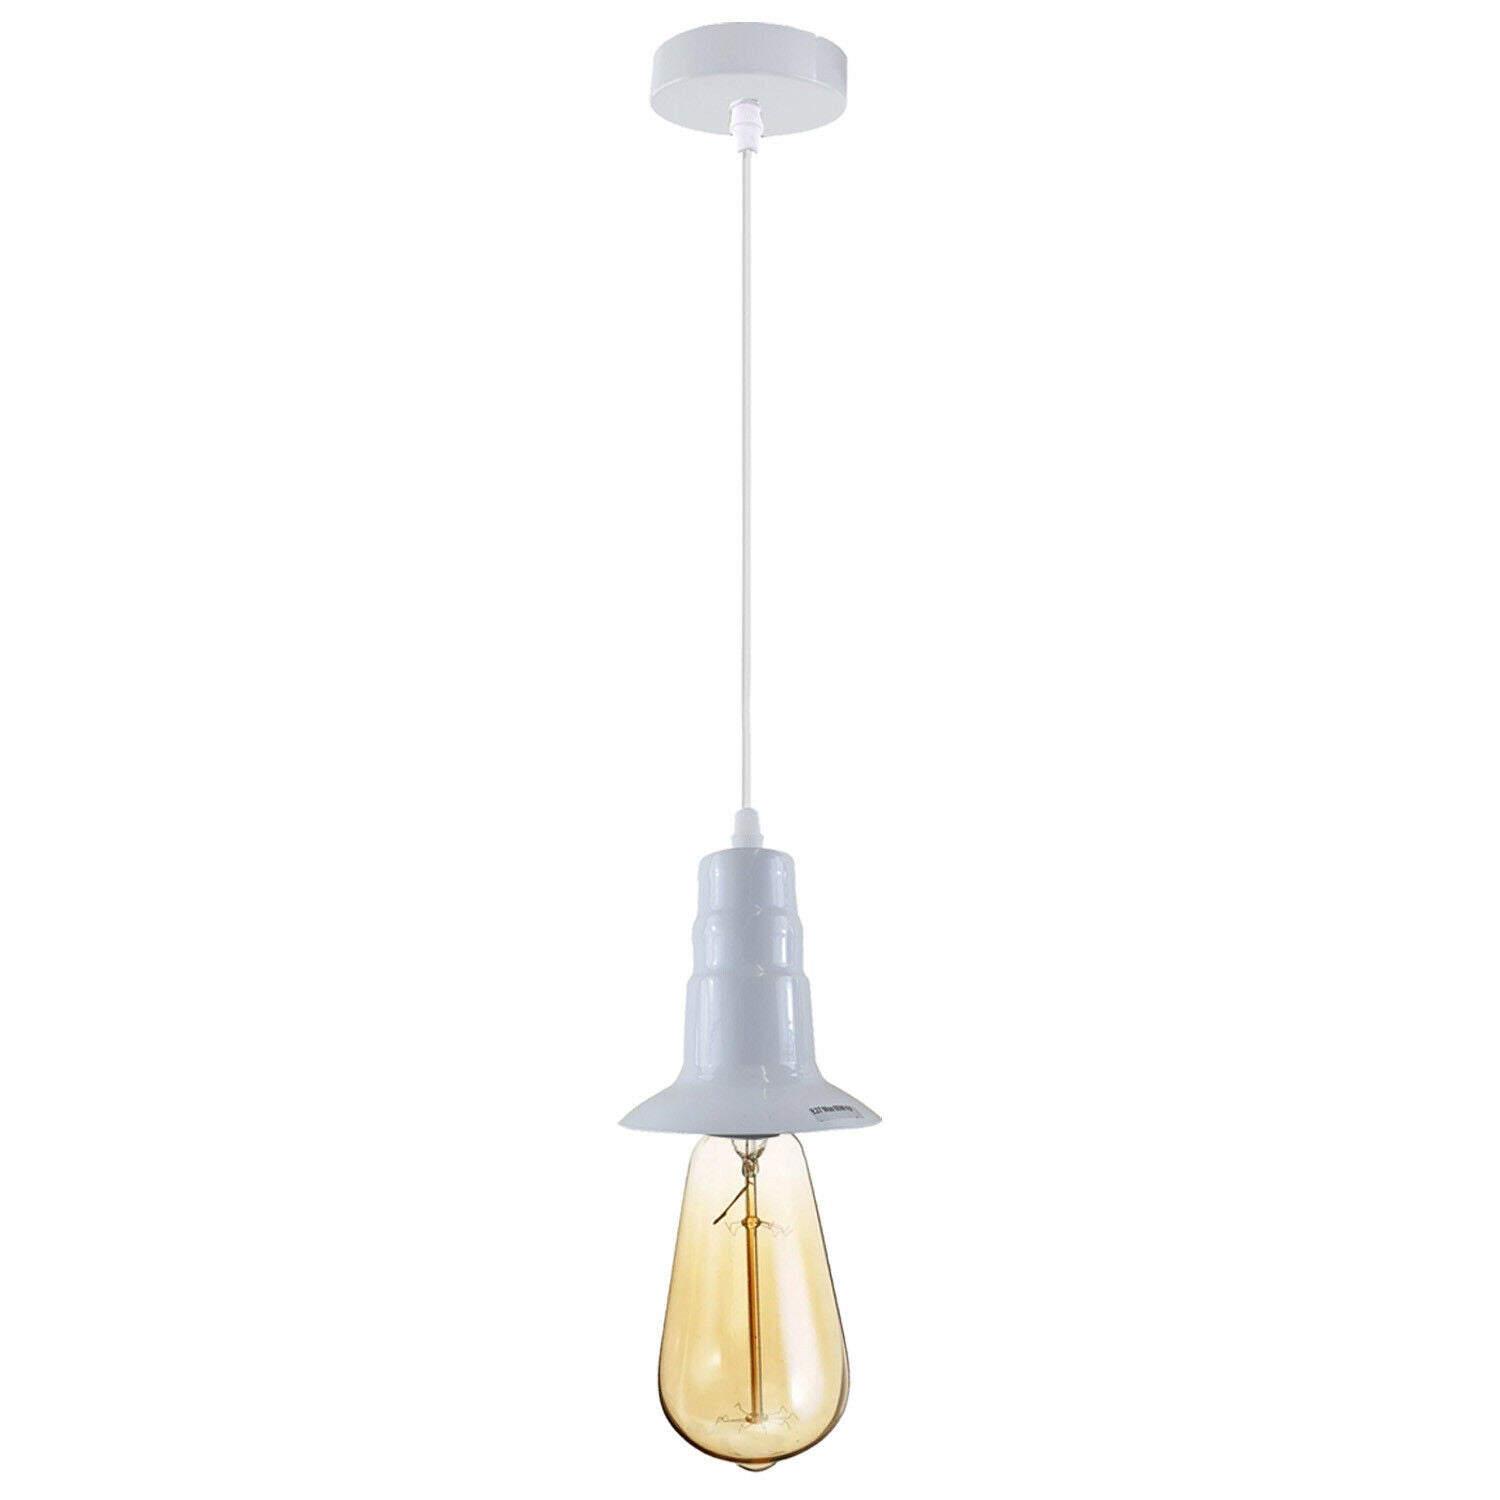 White Ceiling Light Fitting Industrial Pendant Lamp Bulb Holder~1678 - LEDSone UK Ltd